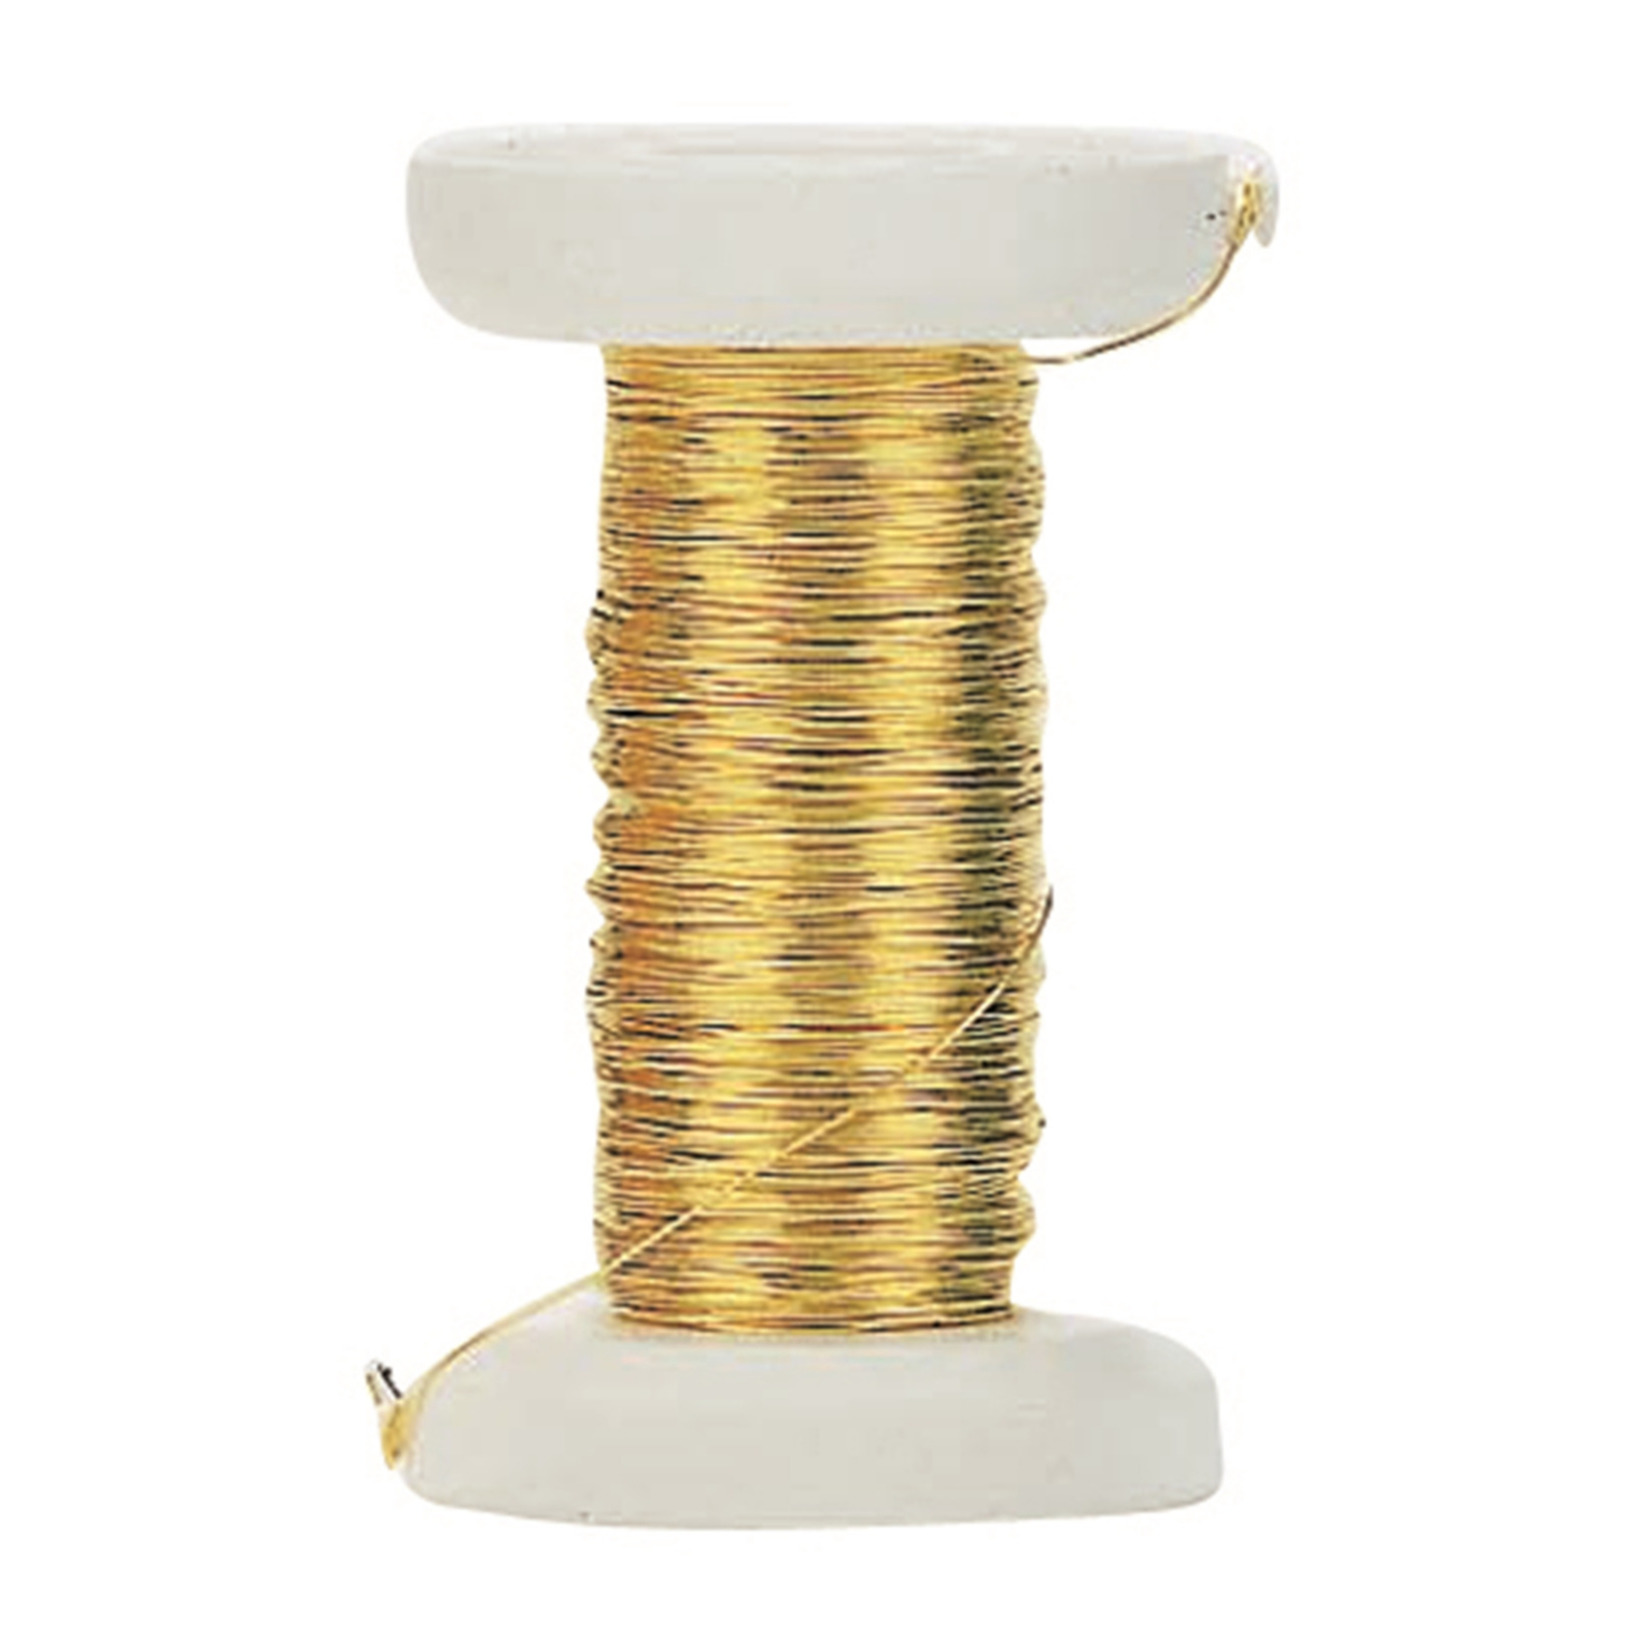 Goud metallic bind draad/koord van 0,4 mm dikte 40 meter -